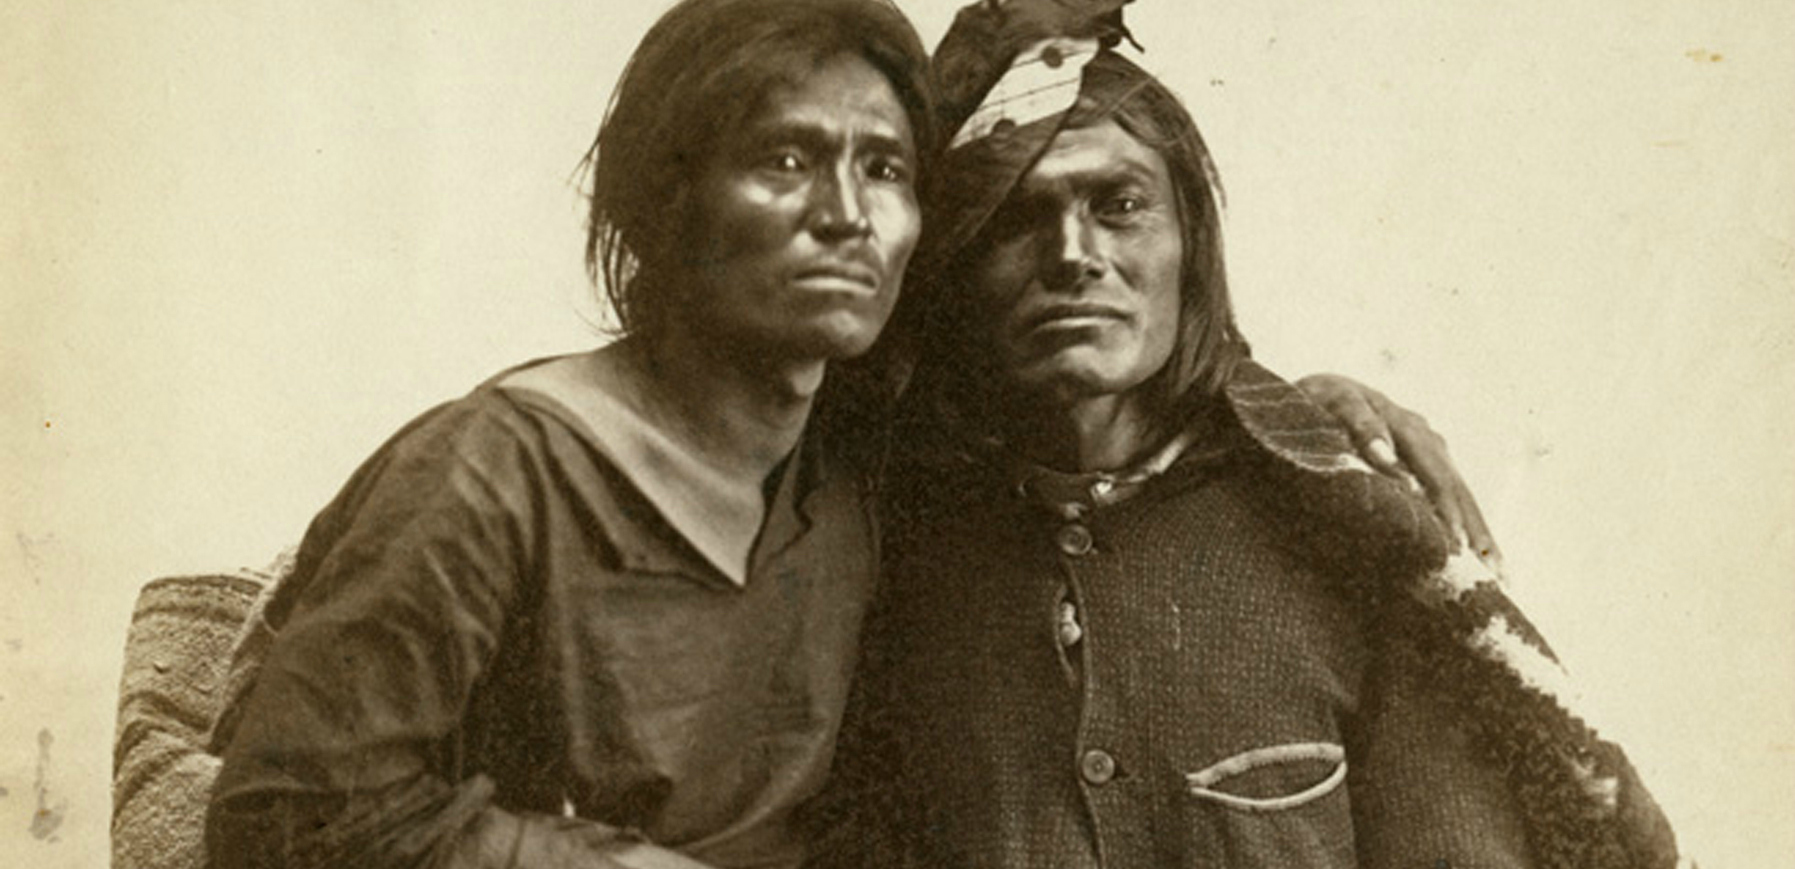 Antes de la colonia, los nativos americanos reconocían 5 géneros sexuales